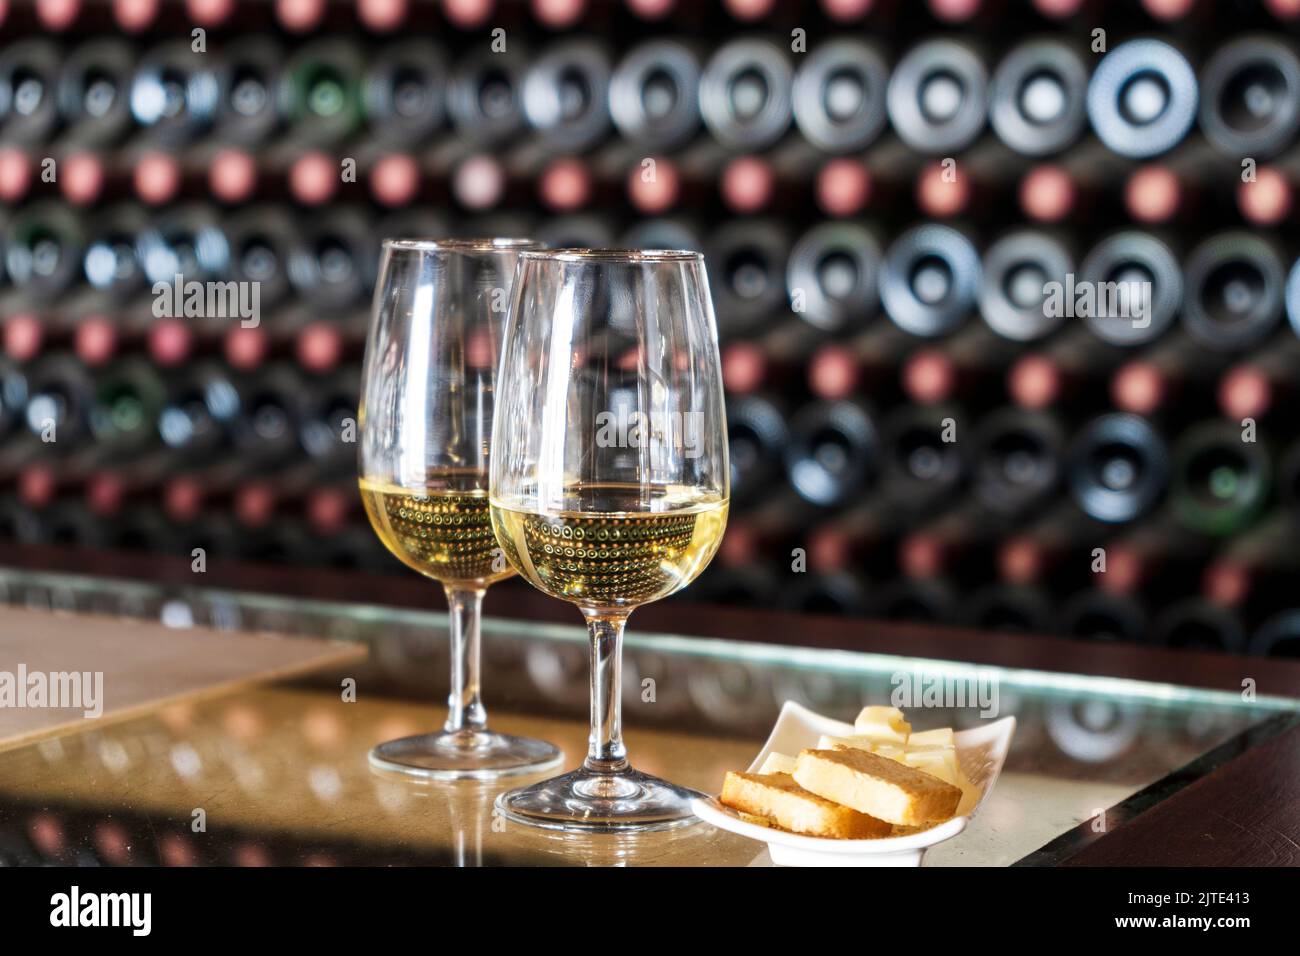 Degustazione di vini in cantina - 2 bicchieri di vino bianco con toast e formaggio con centinaia di bottiglie di vino impilate dietro, Lanzarote, Spagna Foto Stock